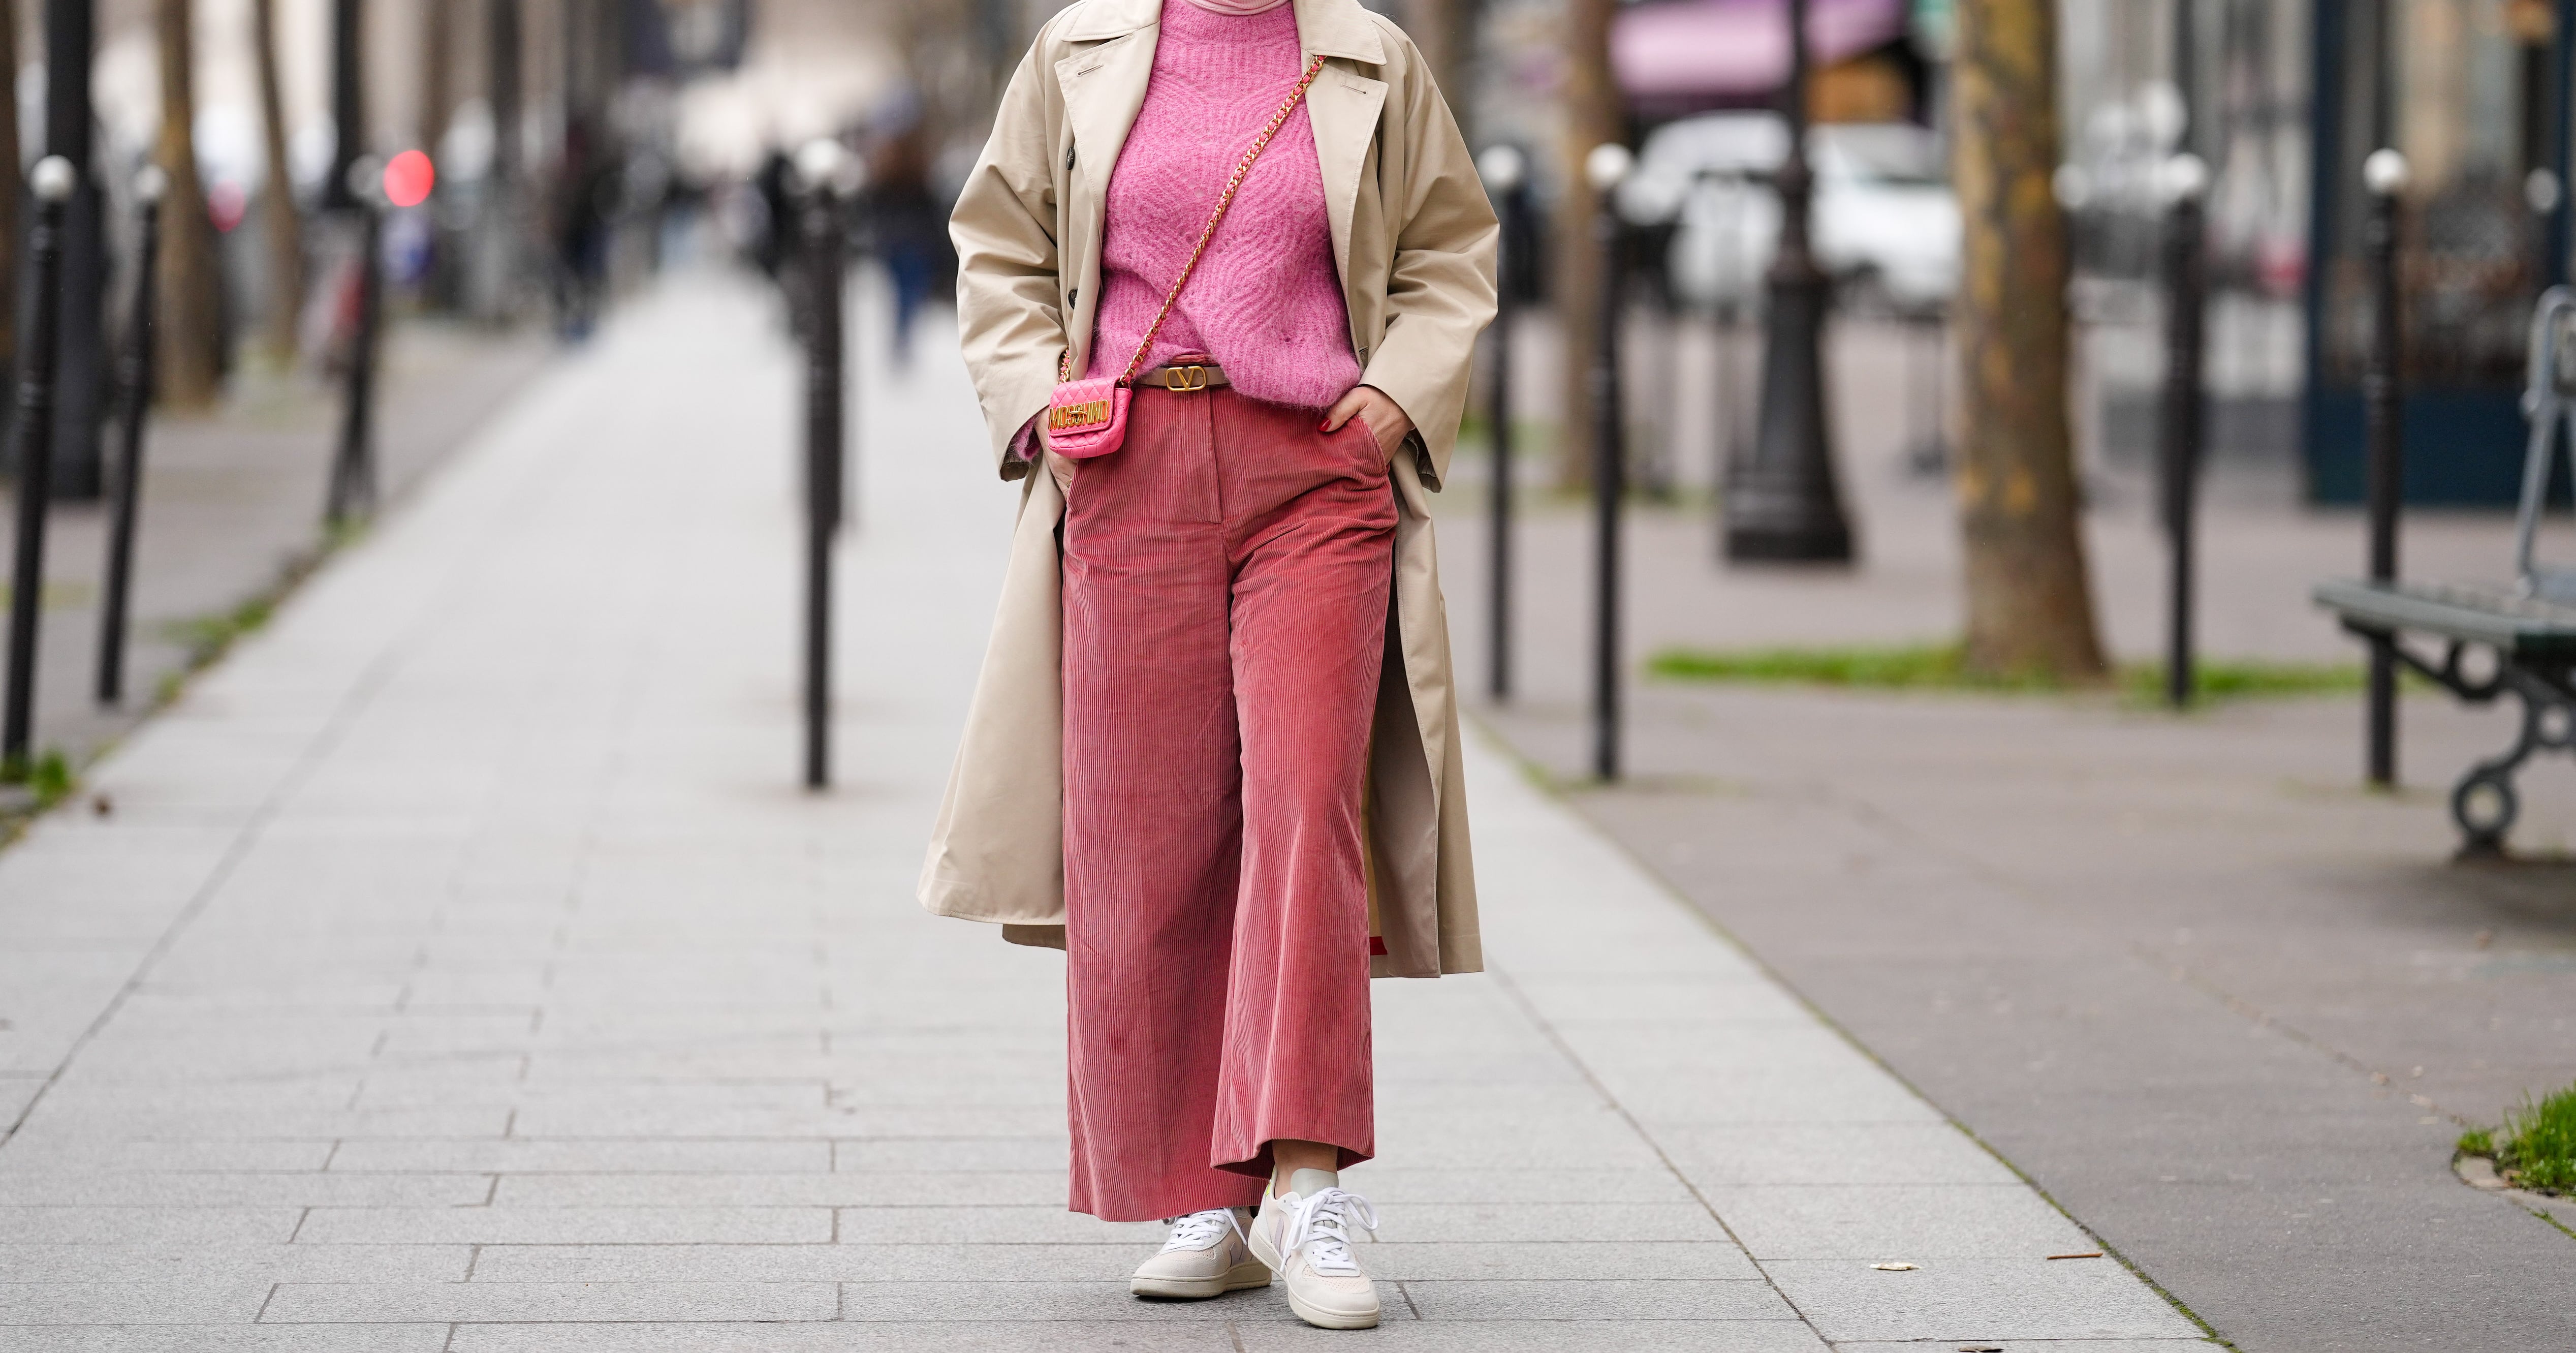 How to wear pink corduroy pants like a fashion girl